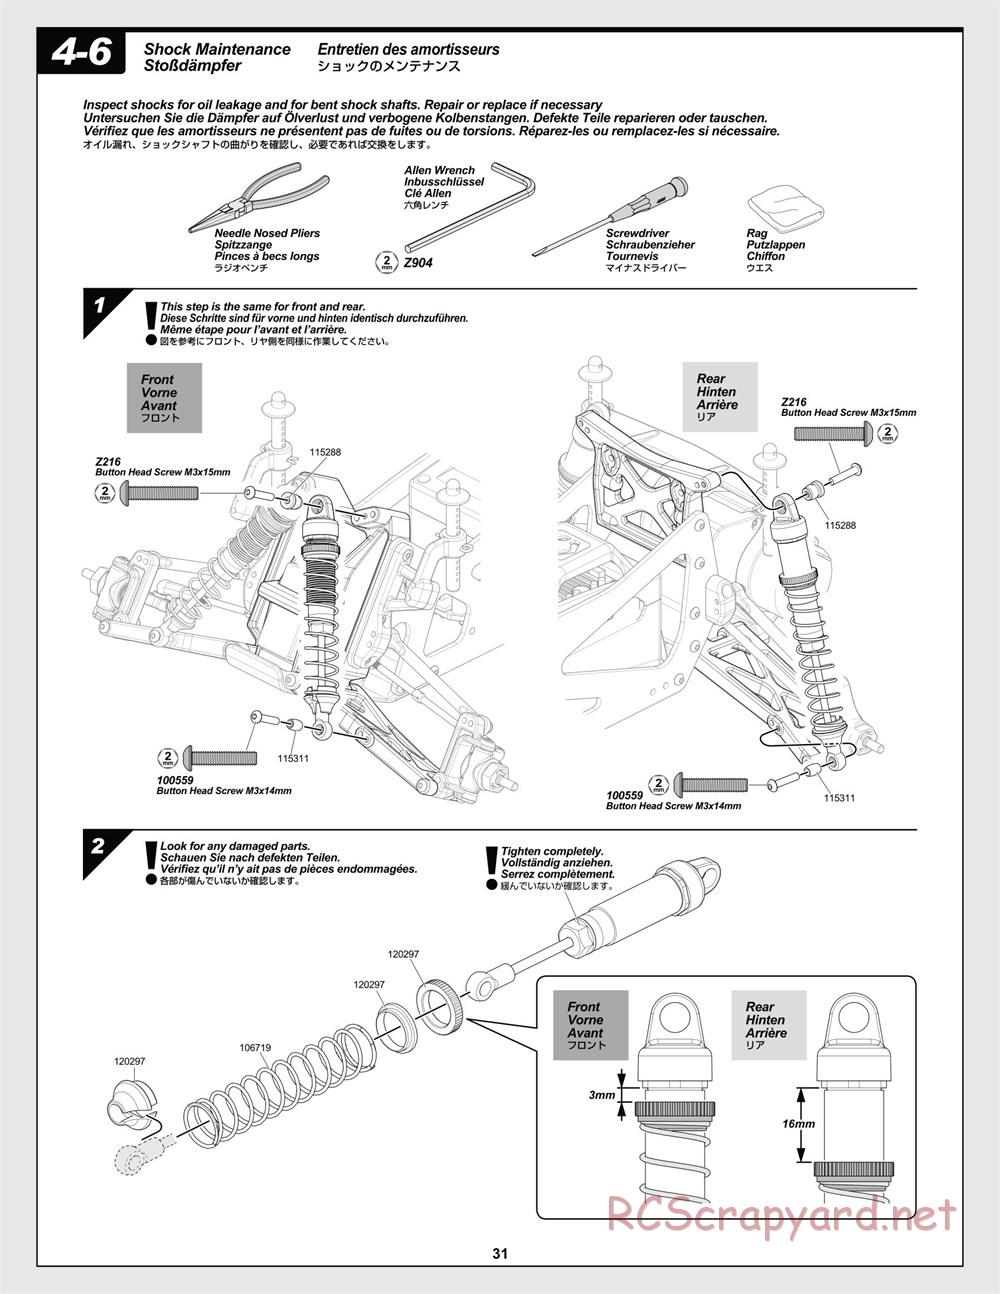 HPI - Jumpshot MT Flux - Manual - Page 31